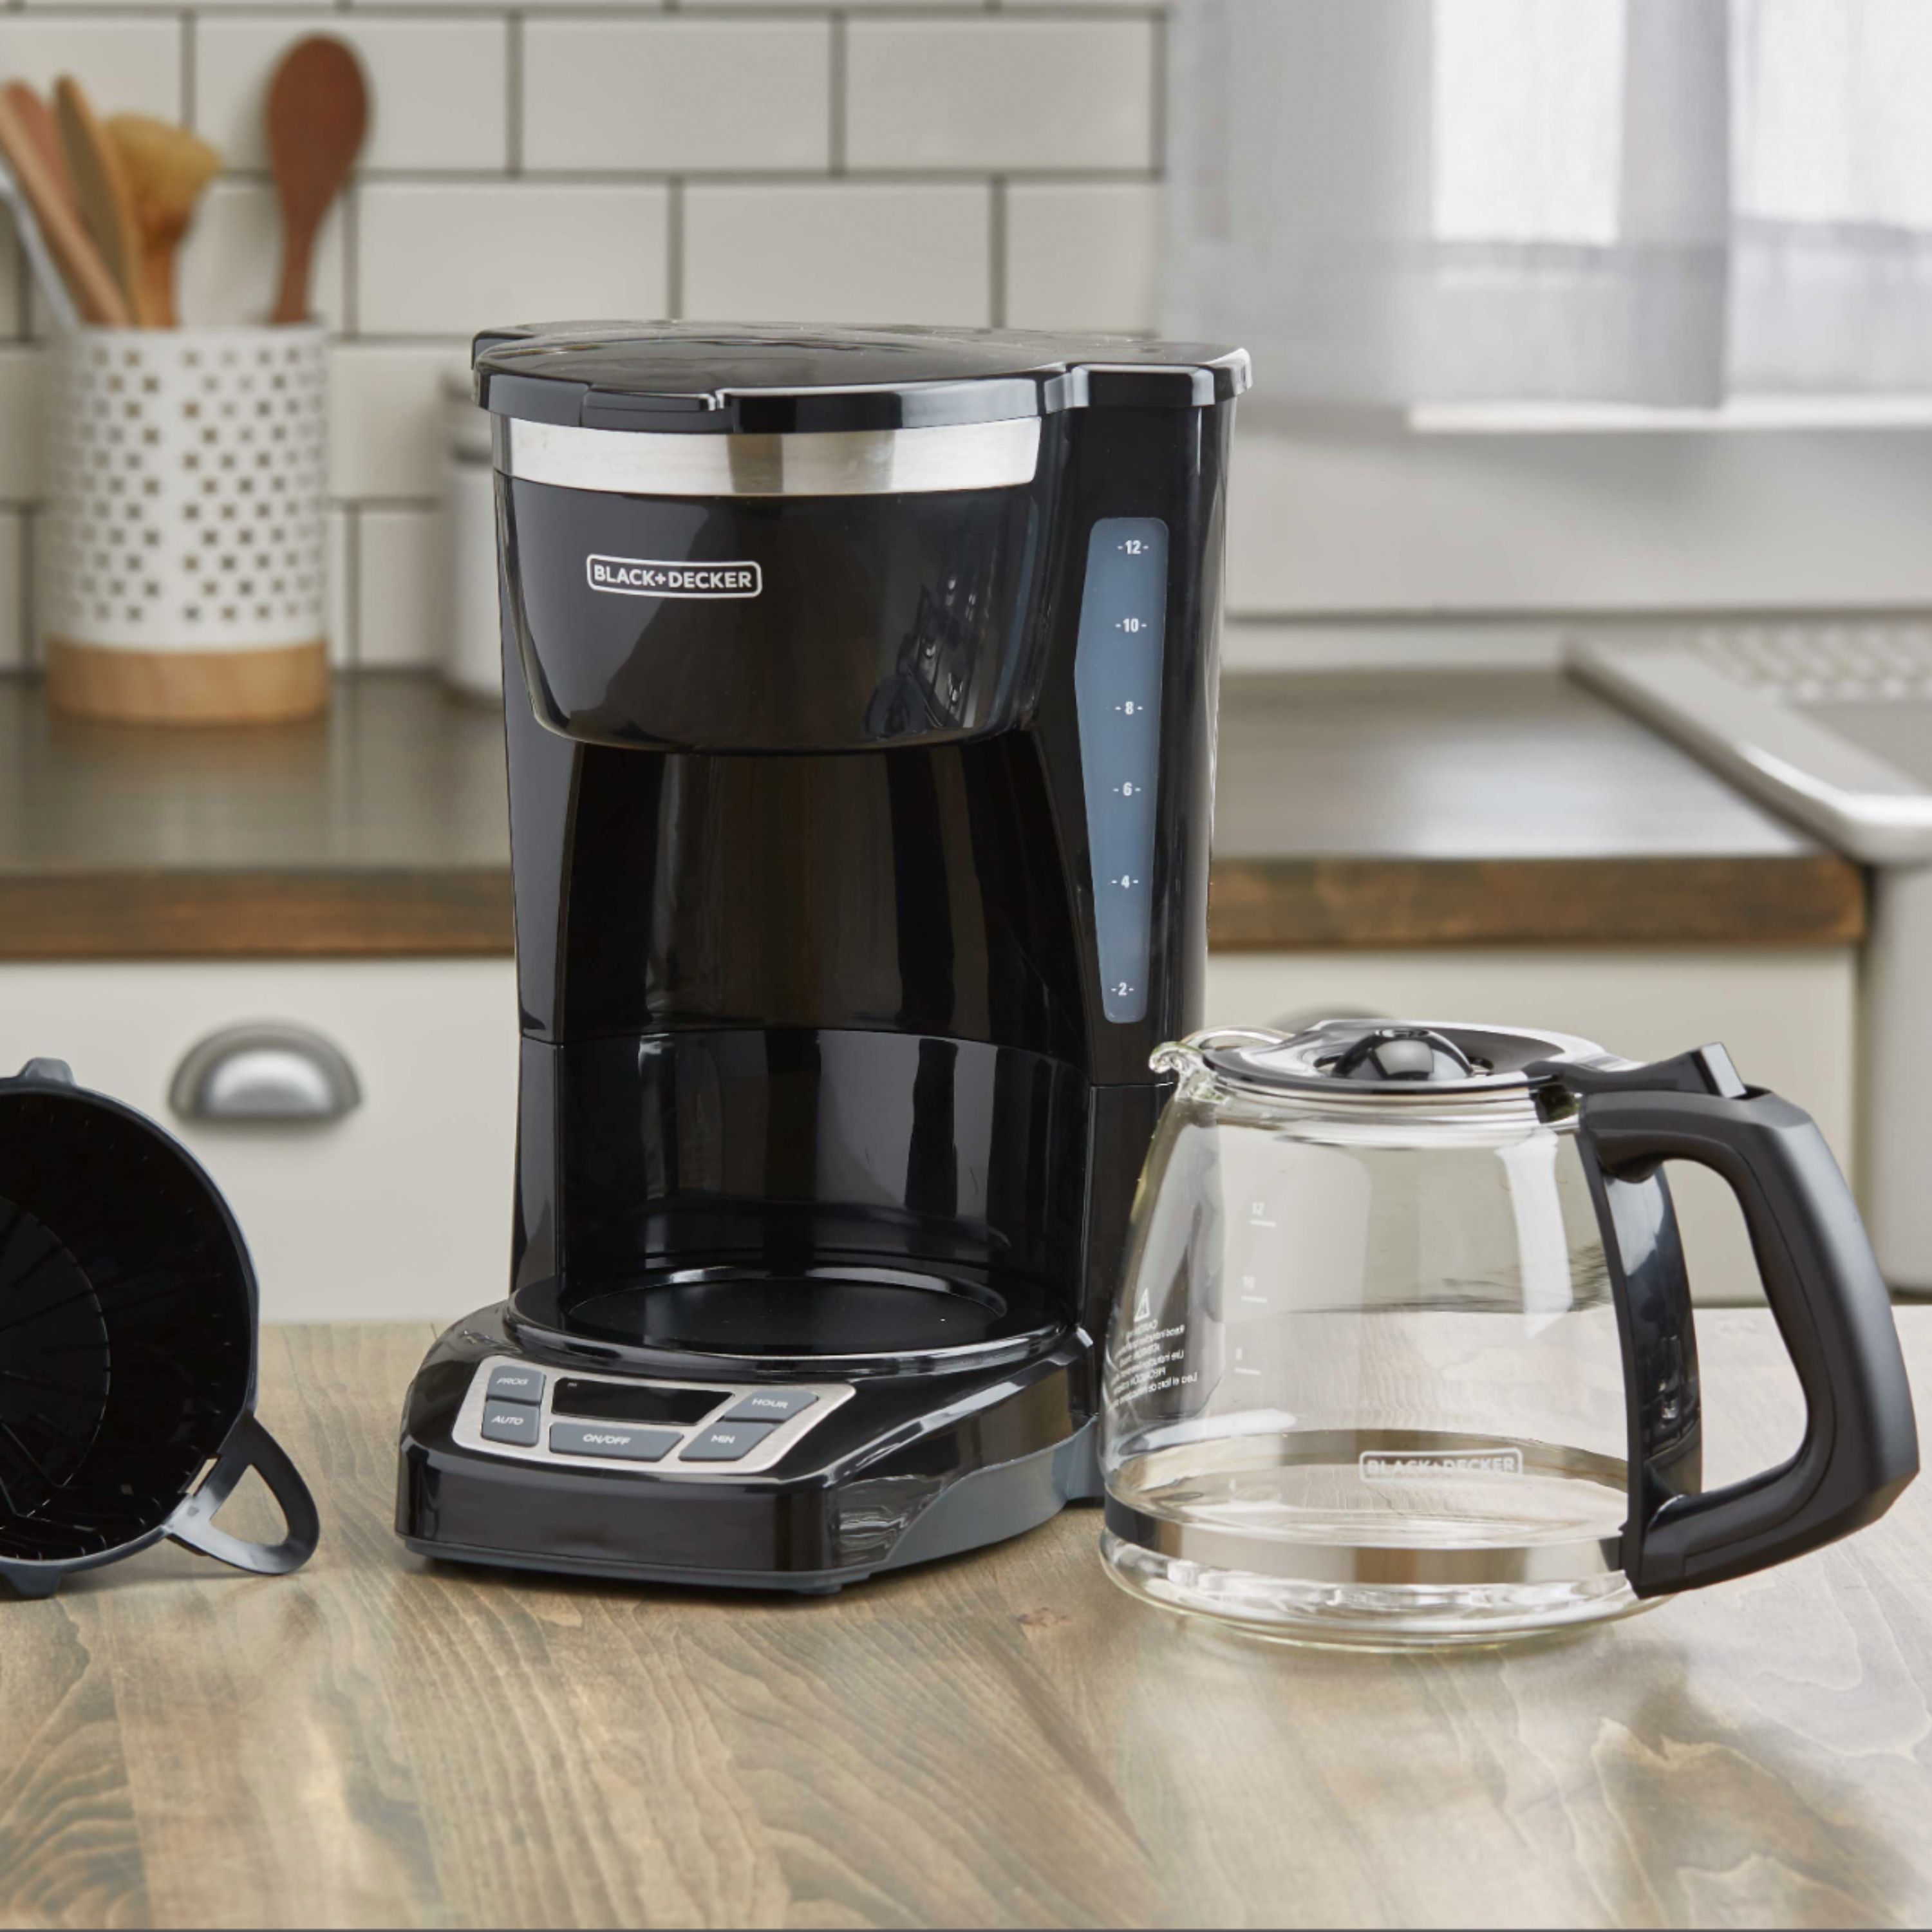 Black+Decker 12-Cup Programmable Coffee Maker Black CM1160B - Best Buy